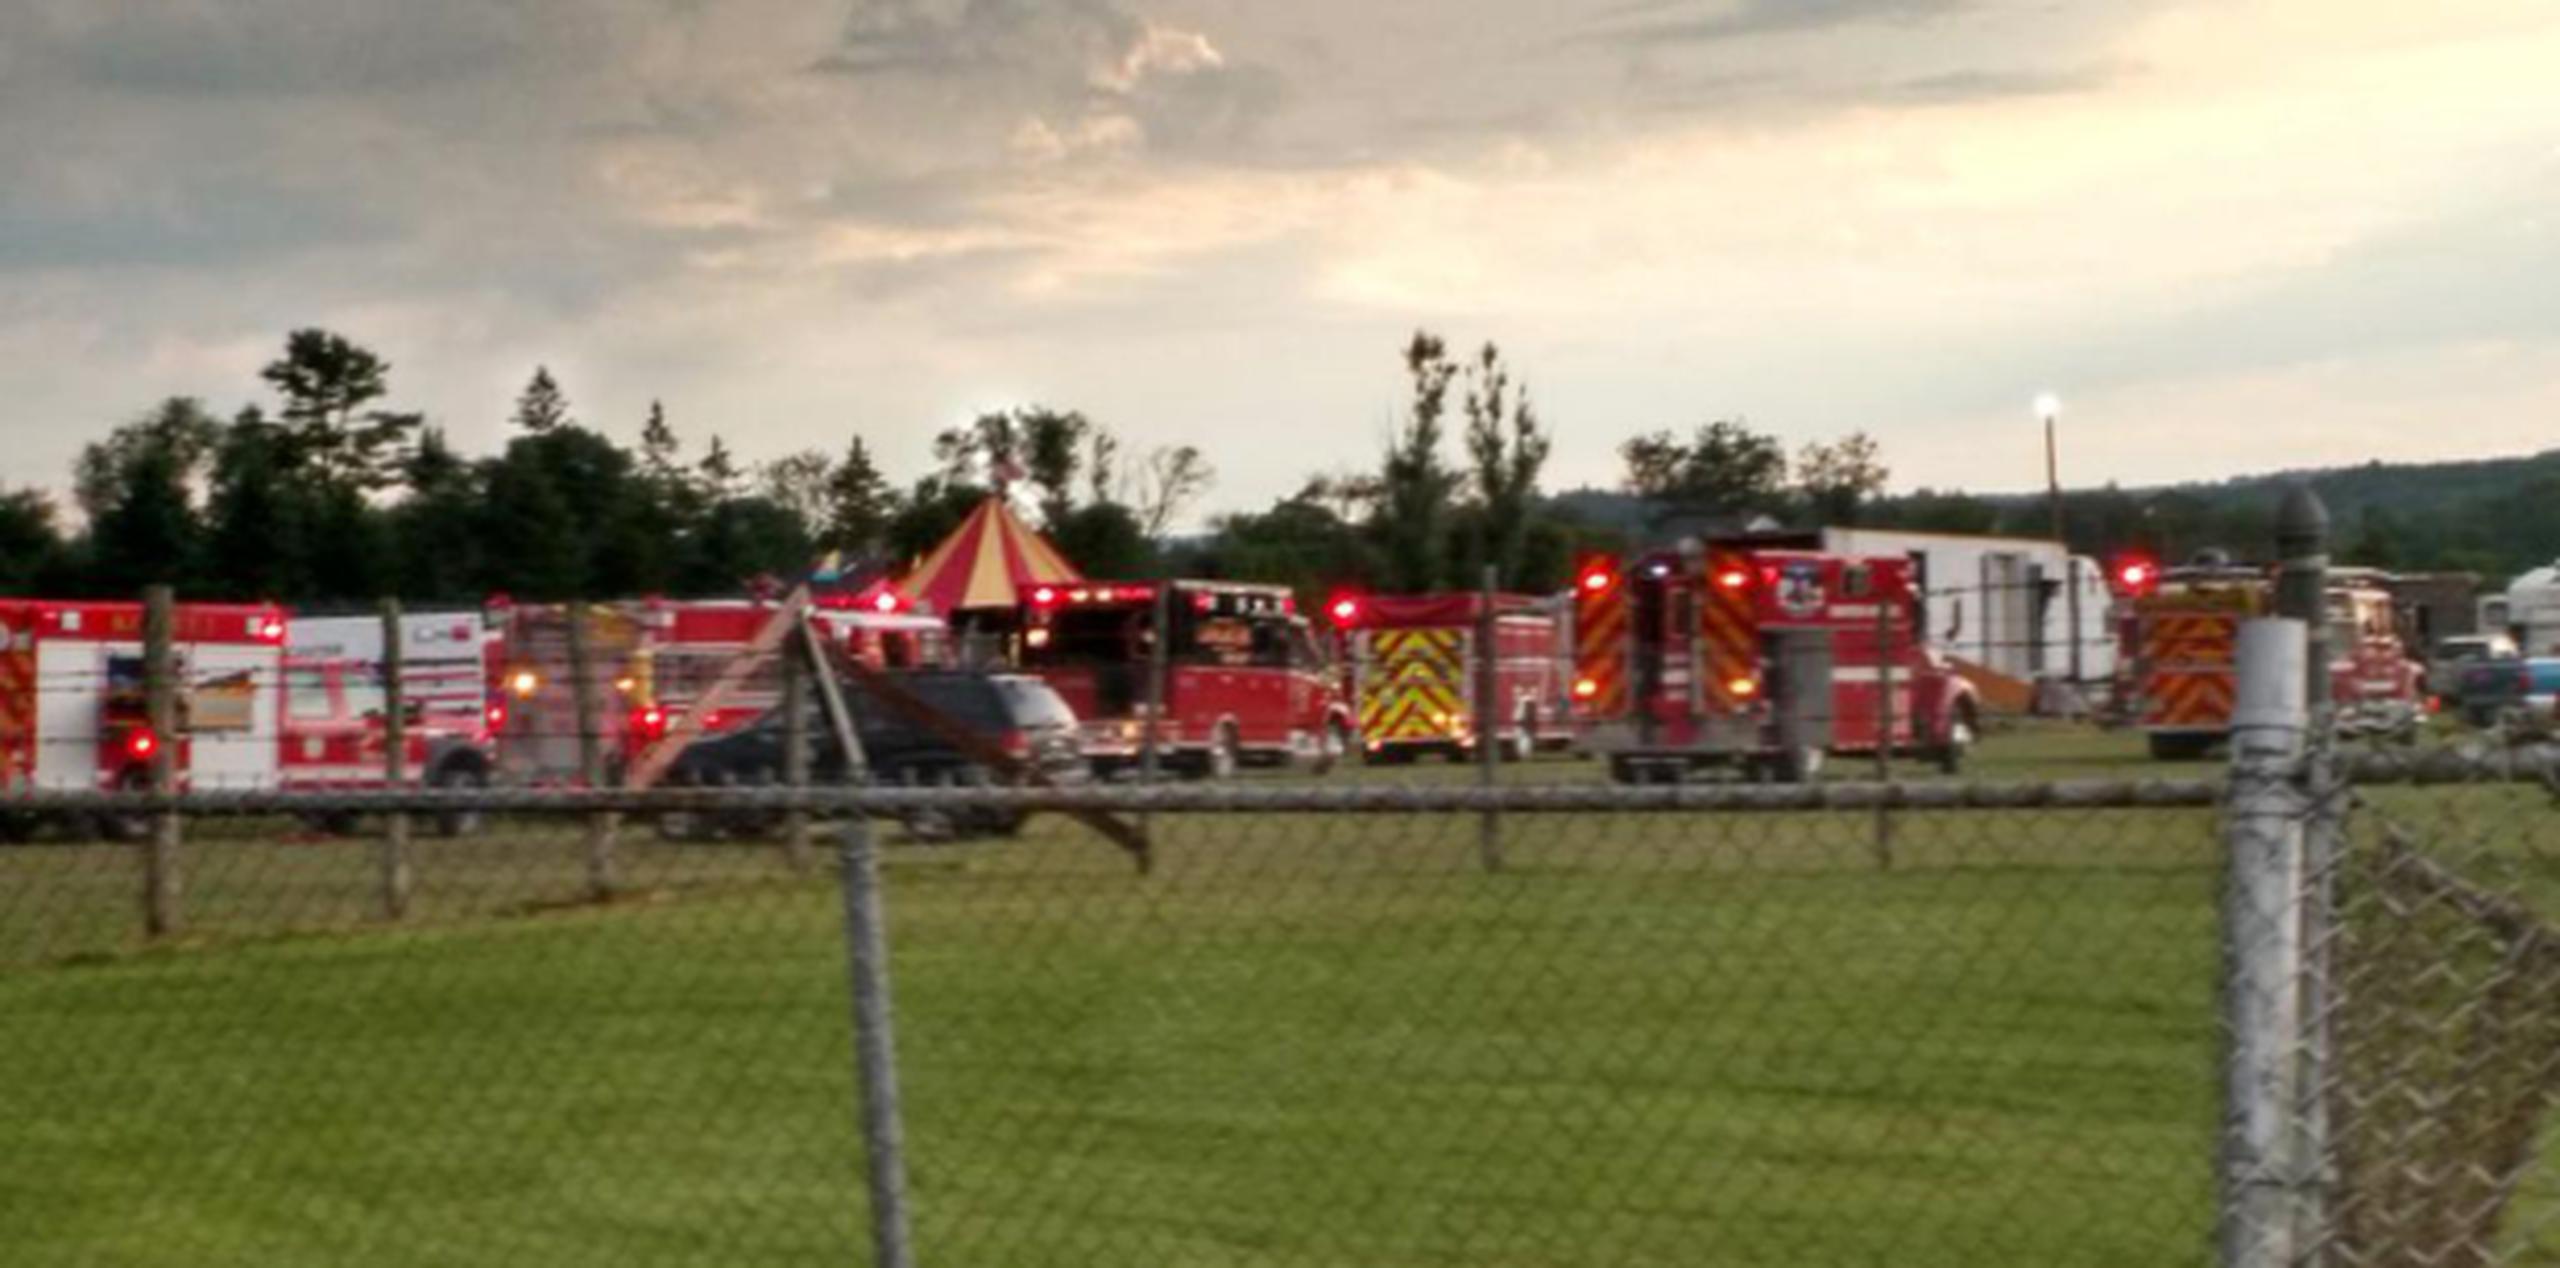 El accidente ocurrió en el parque de diversiones de Lancaster, a unas 90 millas al norte de Concord, la capital estatal. (Sebastian Fuentes via AP)